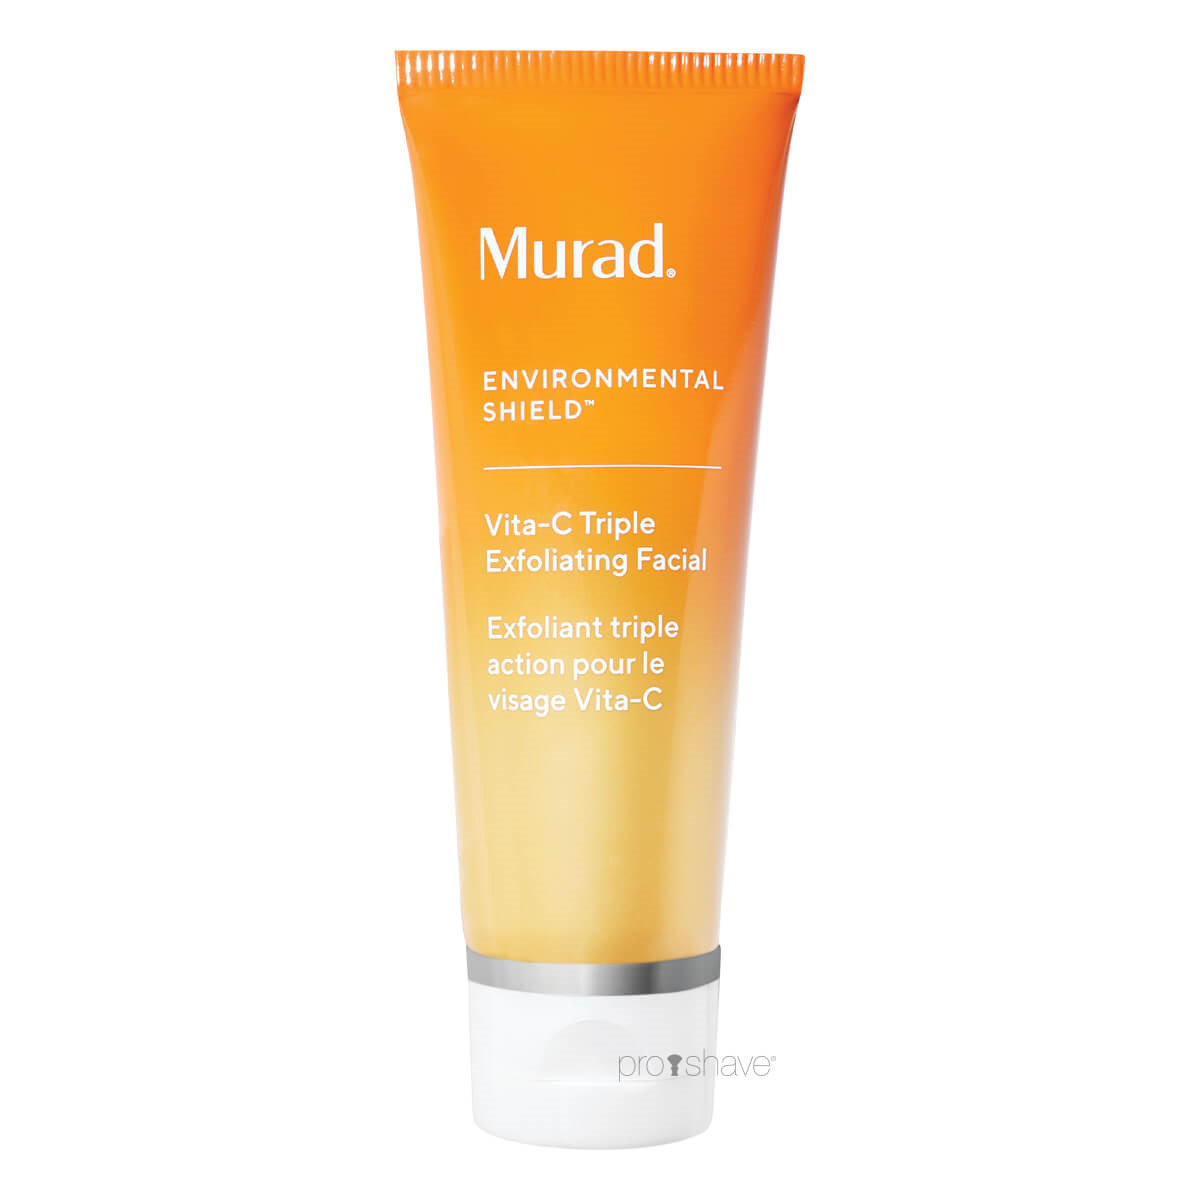 Se Murad Vita-C Triple Exfoliating Facial, Environmental Shield, 60 ml. hos Proshave